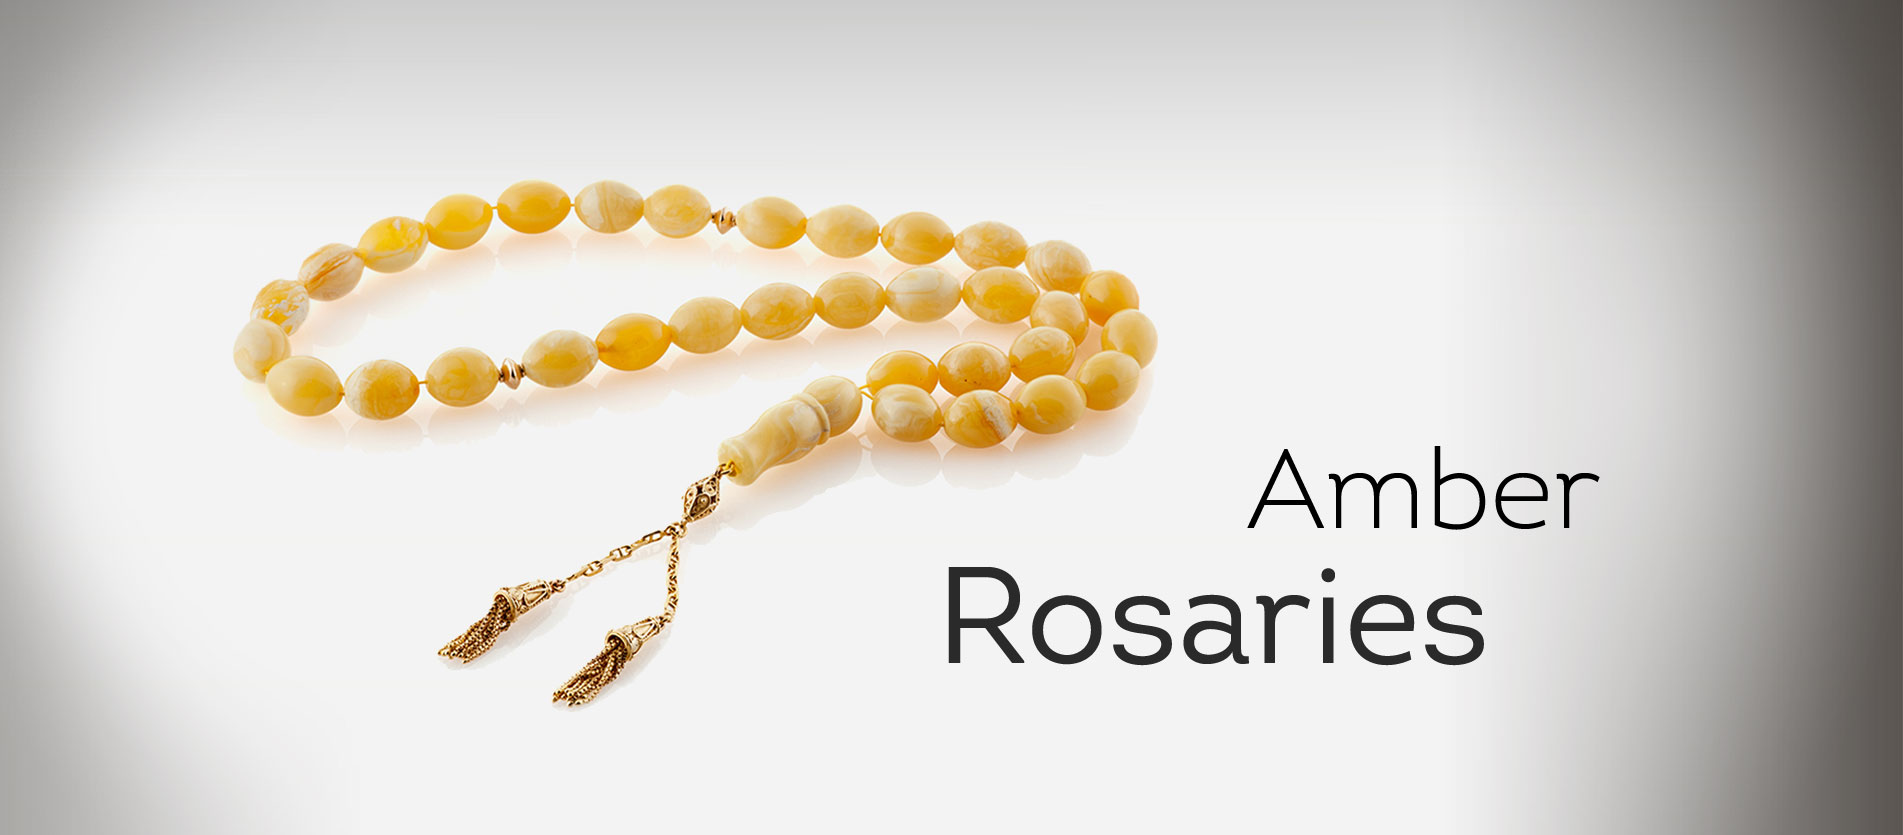 Amber Rosaries